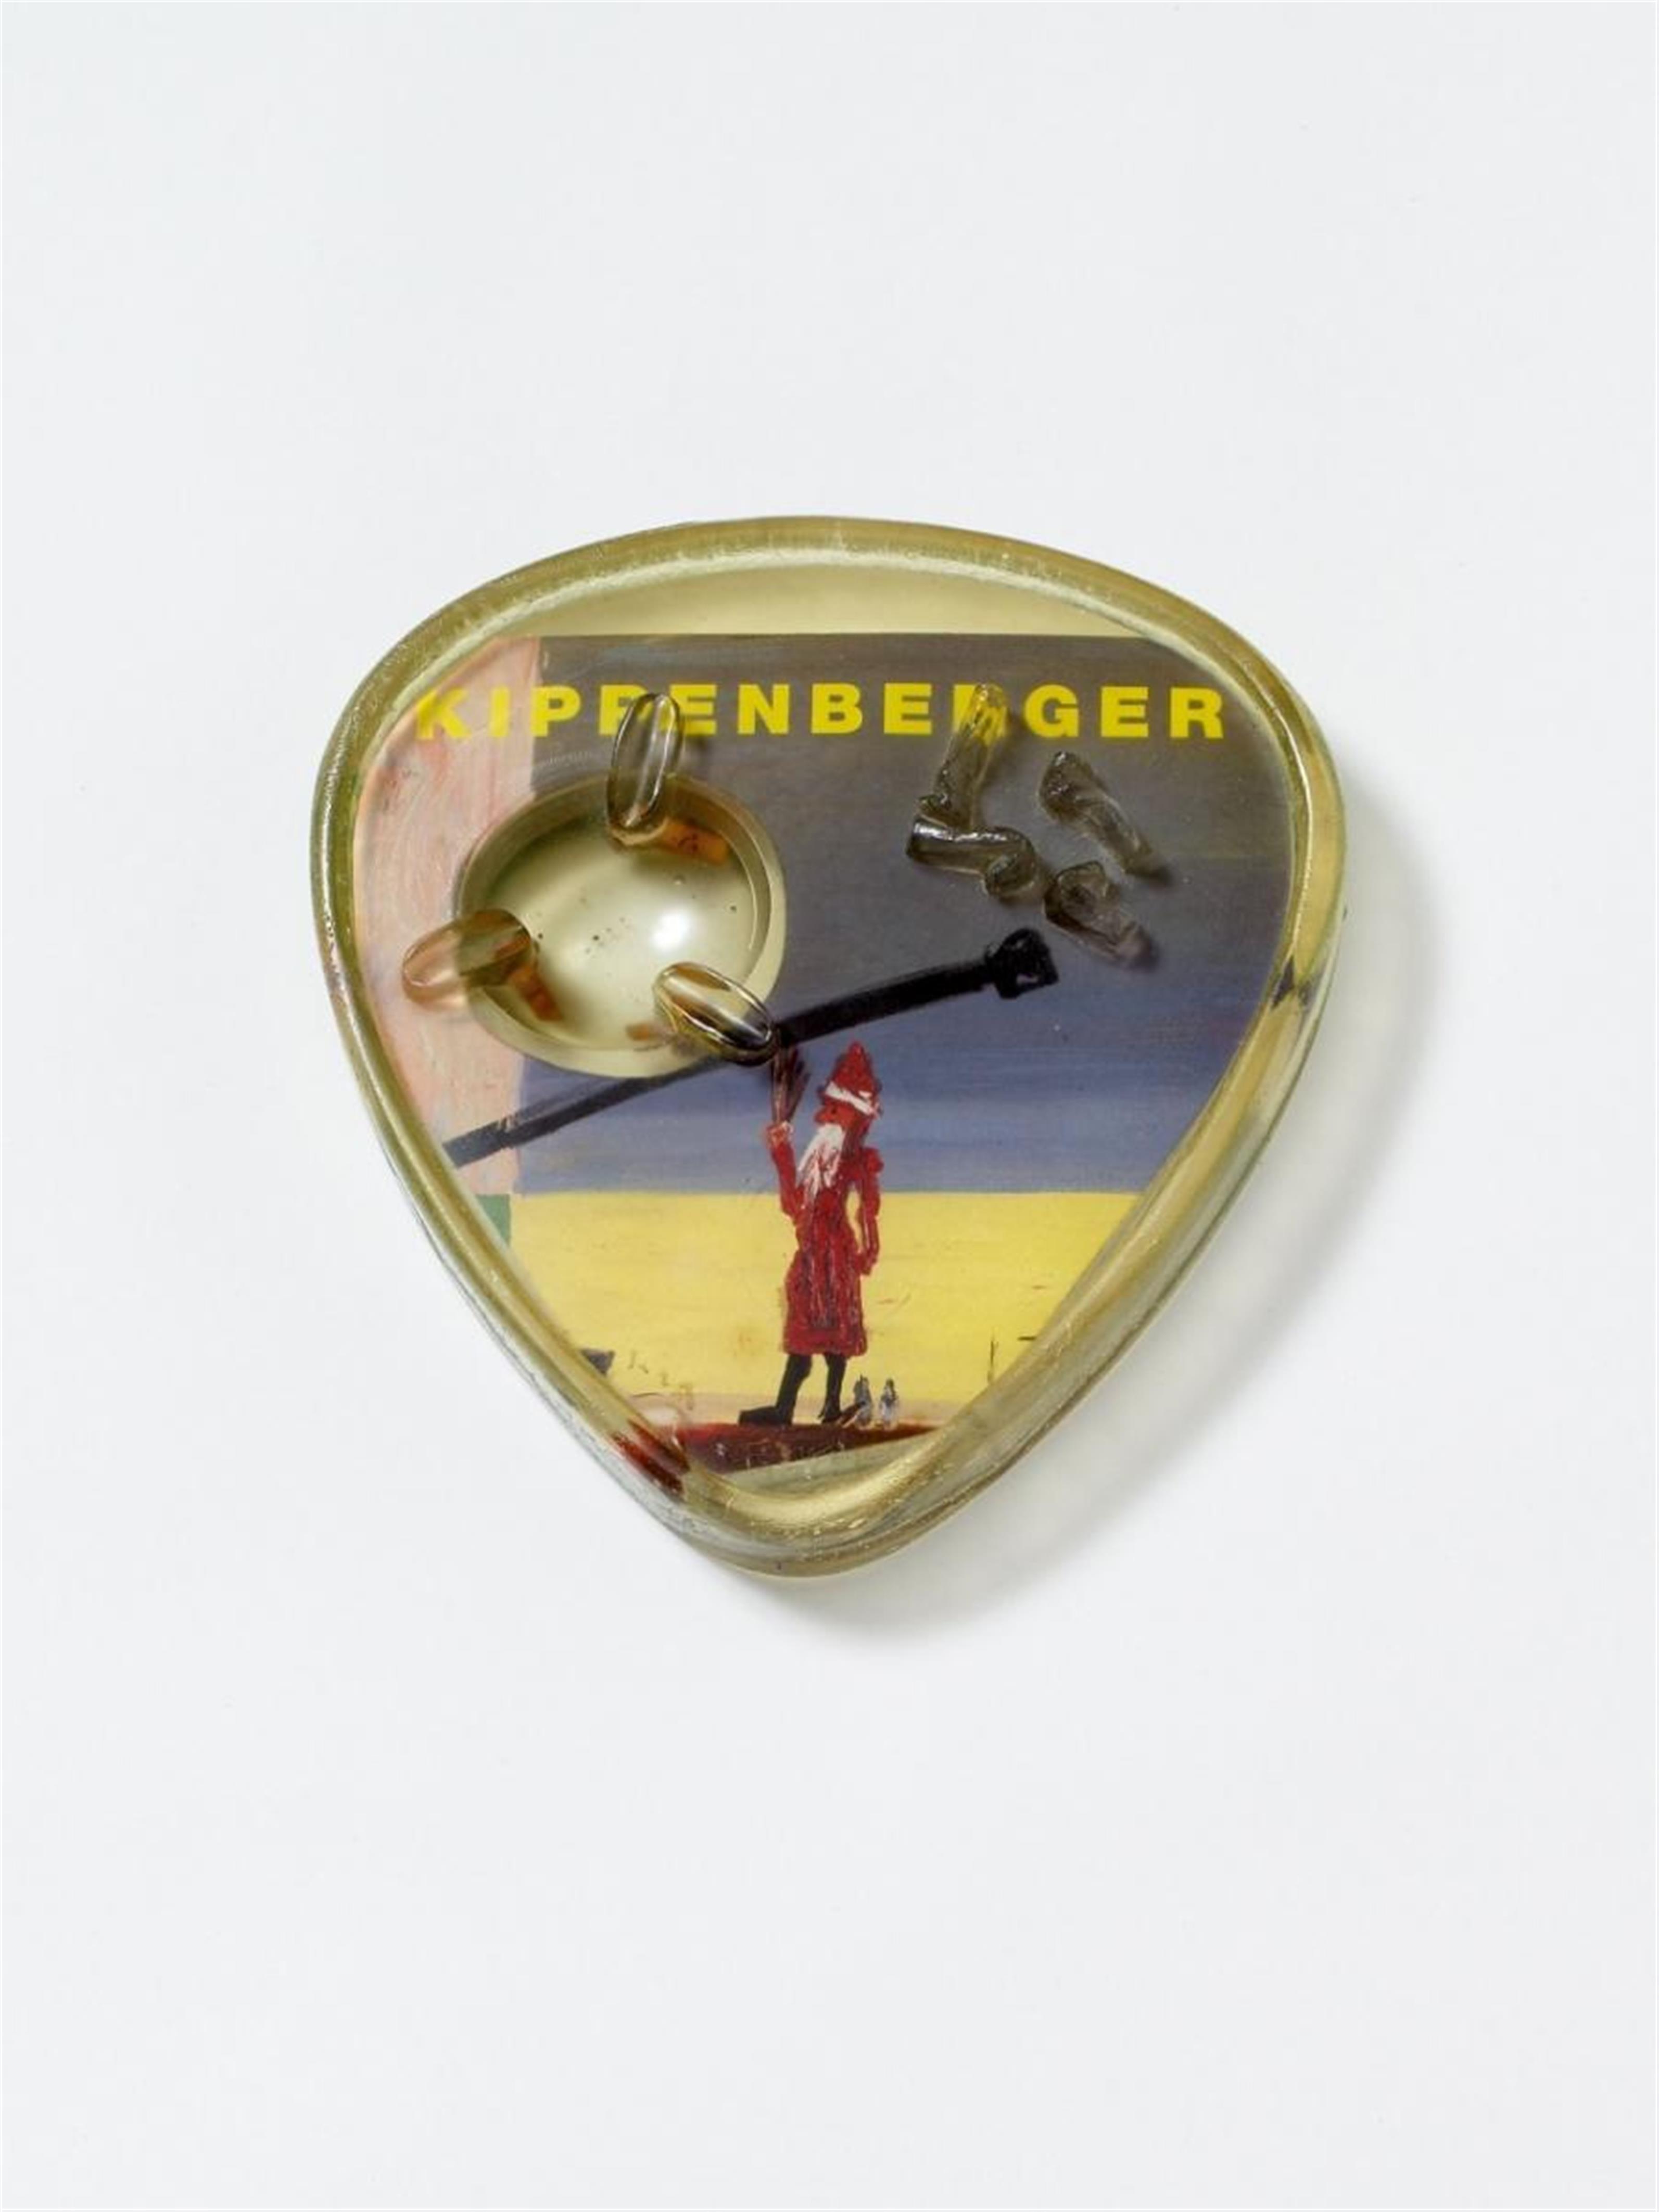 Martin Kippenberger - Aschenbecher - image-1